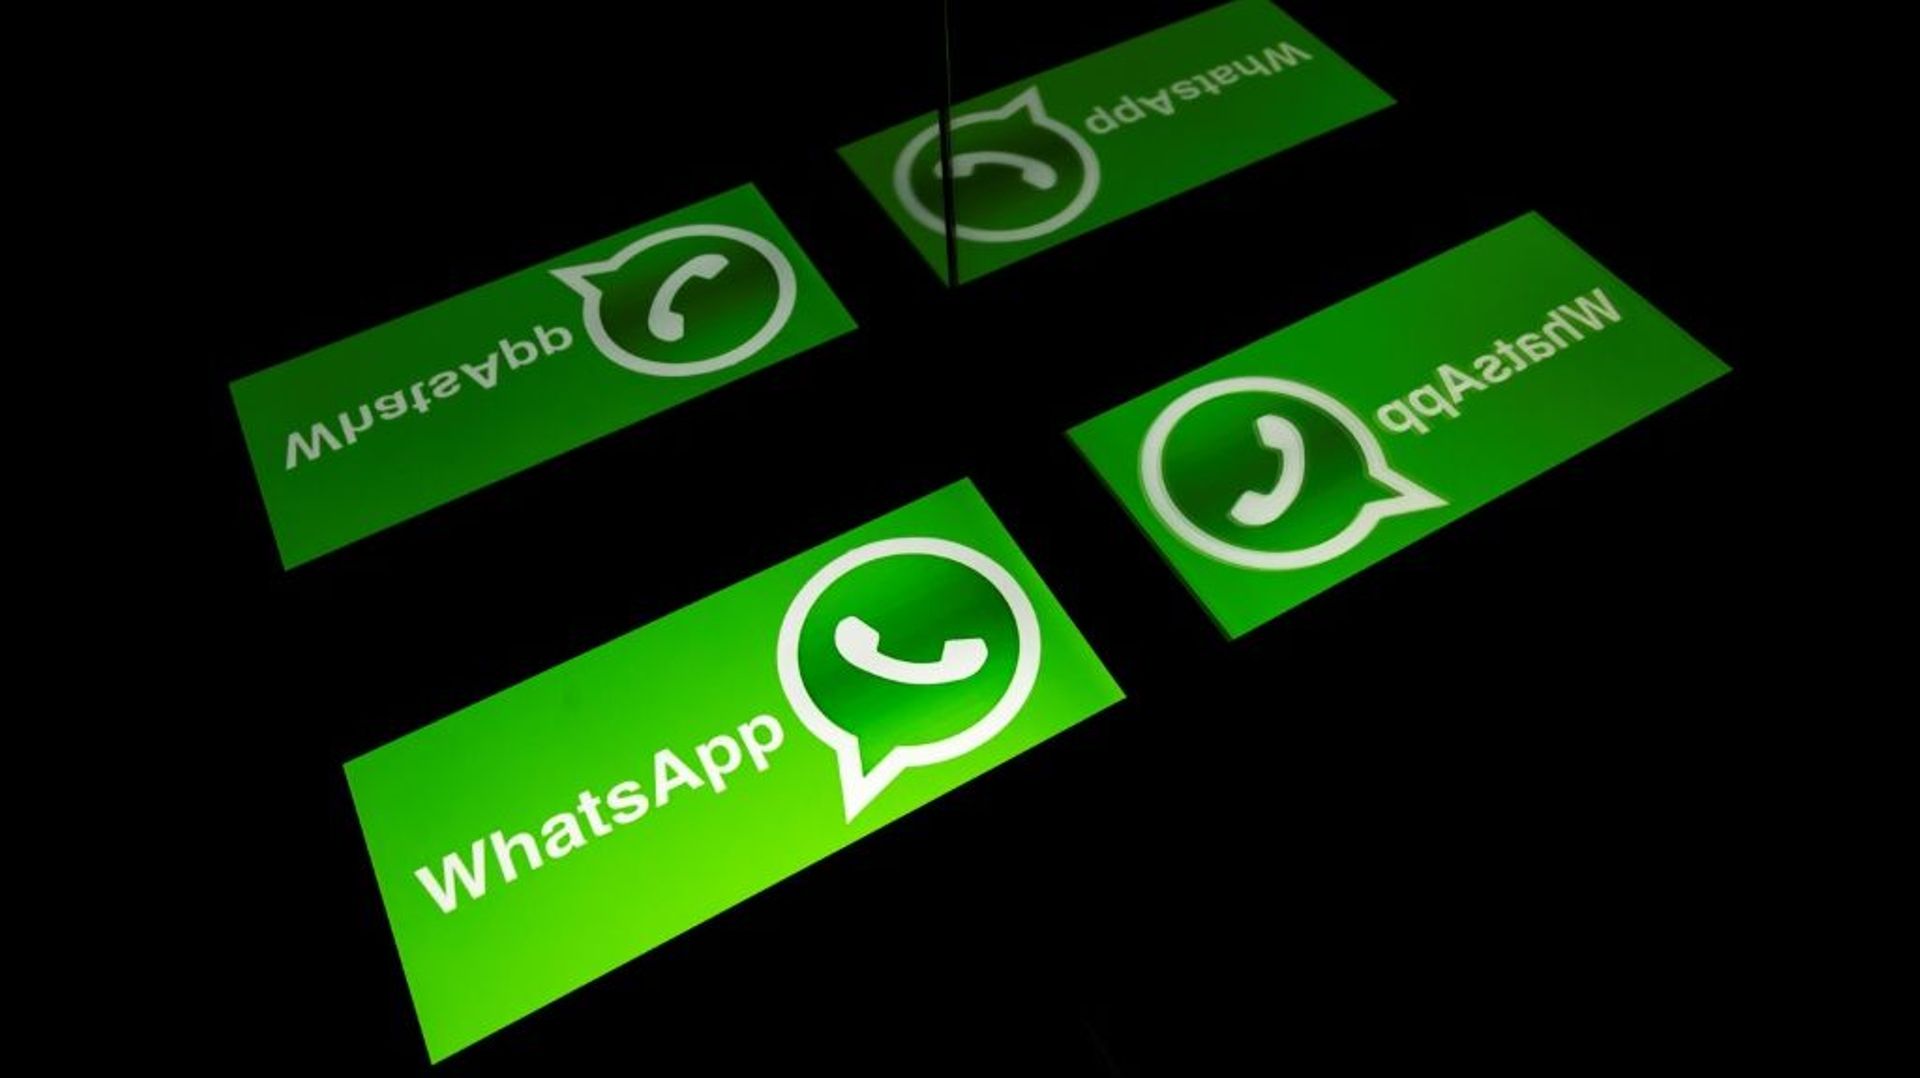 WhatsApp annonce repousser de trois mois le changement de ses conditions d'utilisation après les craintes exprimées par de nombreux utilisateurs de voir le service de messagerie mobile partager des données confidentielles avec sa maison mère, Facebook